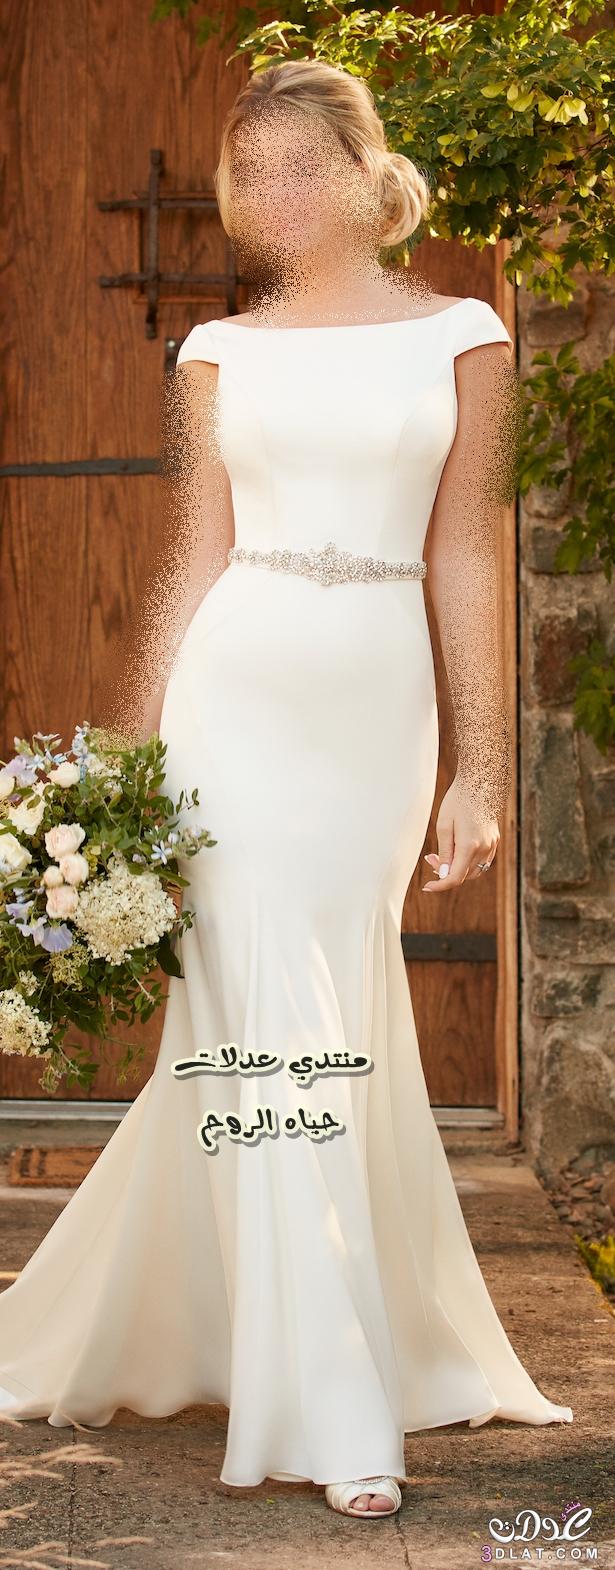 20 صورة خلابة لفساتين زفاف منفوشة , صور فساتين زفاف , تصاميم عالميه لفستان زفافك